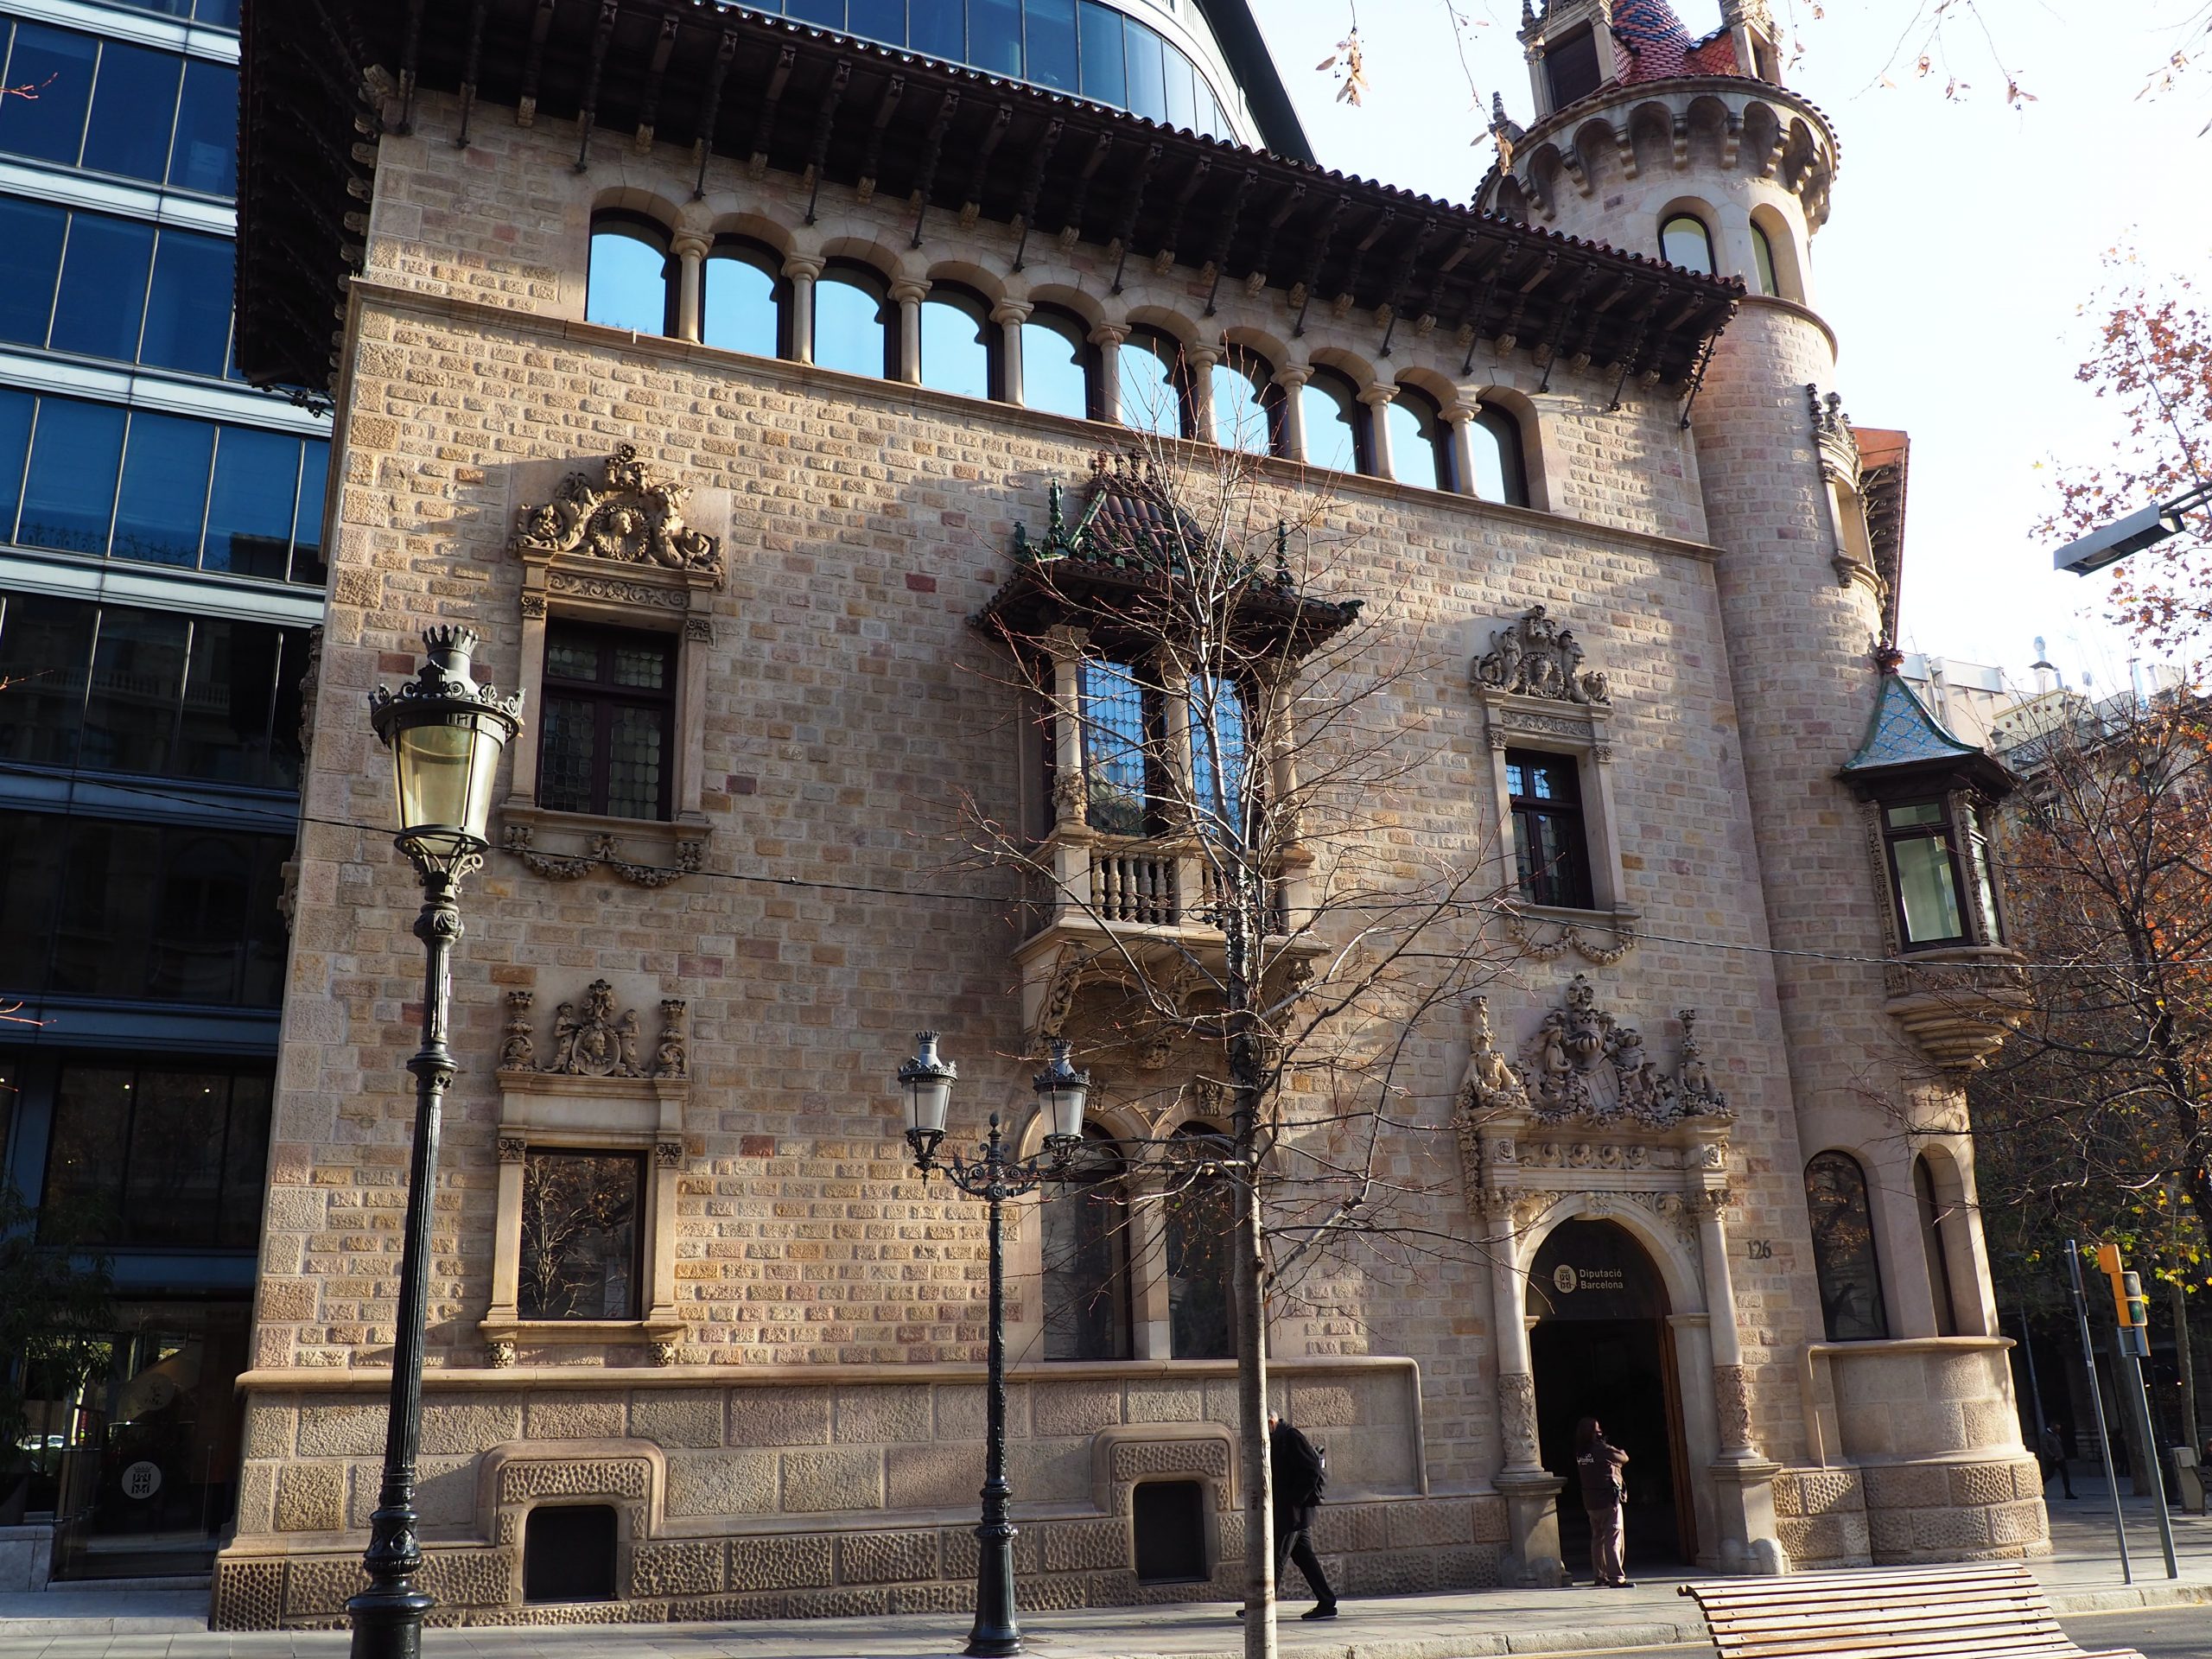 exterior de la casa serra en rambla catalunya, barcelona. arquitectura modernista de inspiración medieval